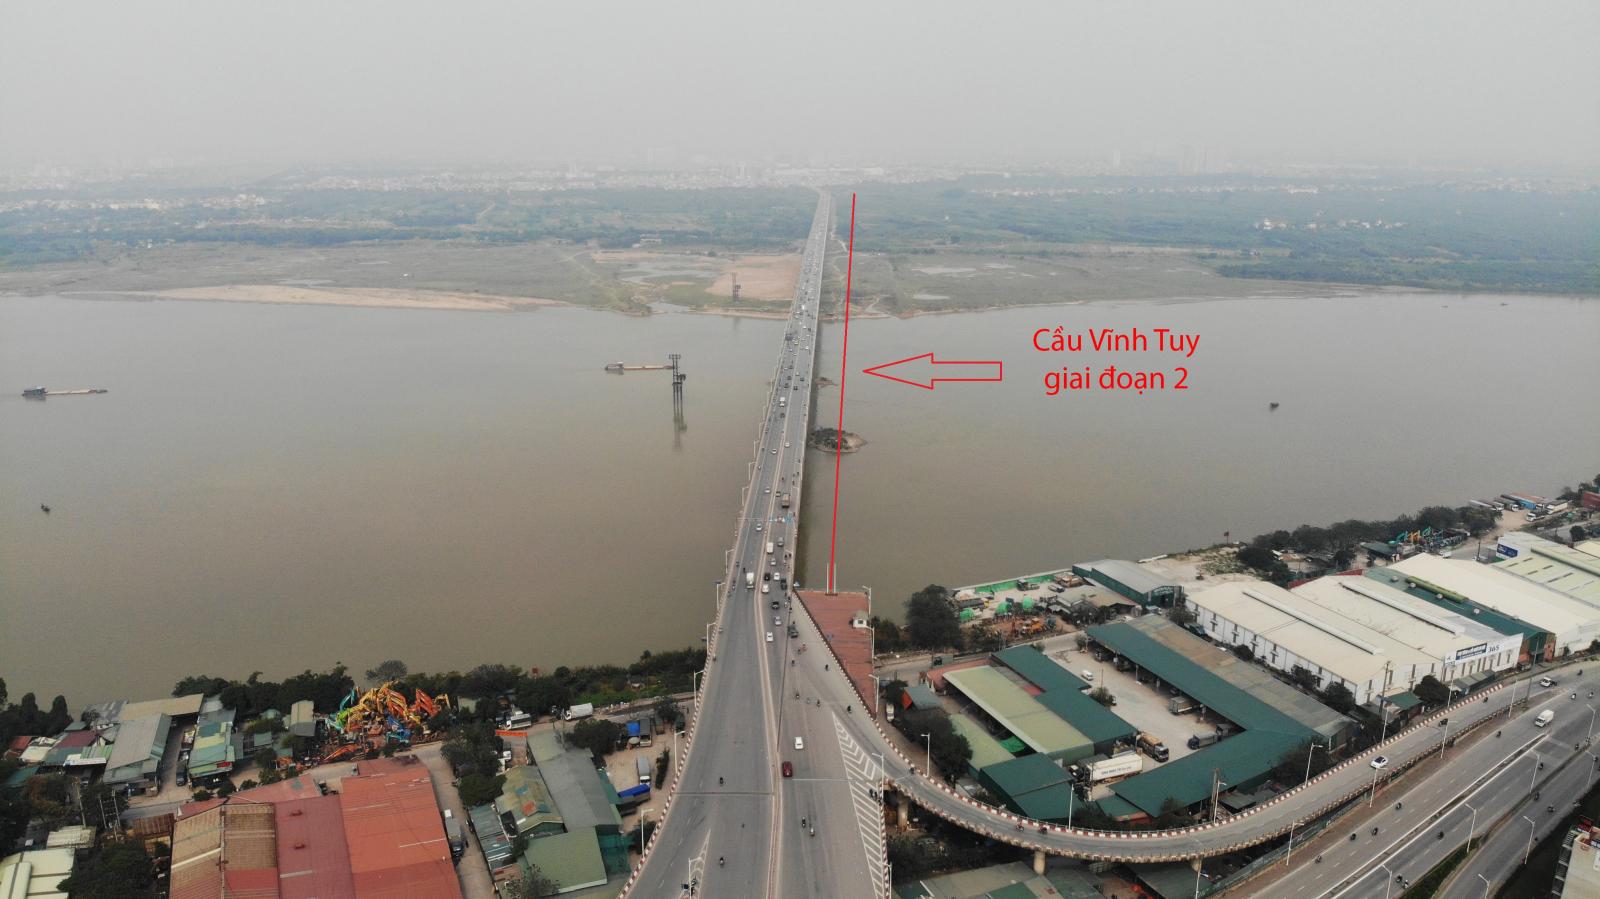 Cầu Vĩnh Tuy giai đoạn 2 sẽ có hình dáng tương tự cầu Vĩnh Tuy giai đoạn 1